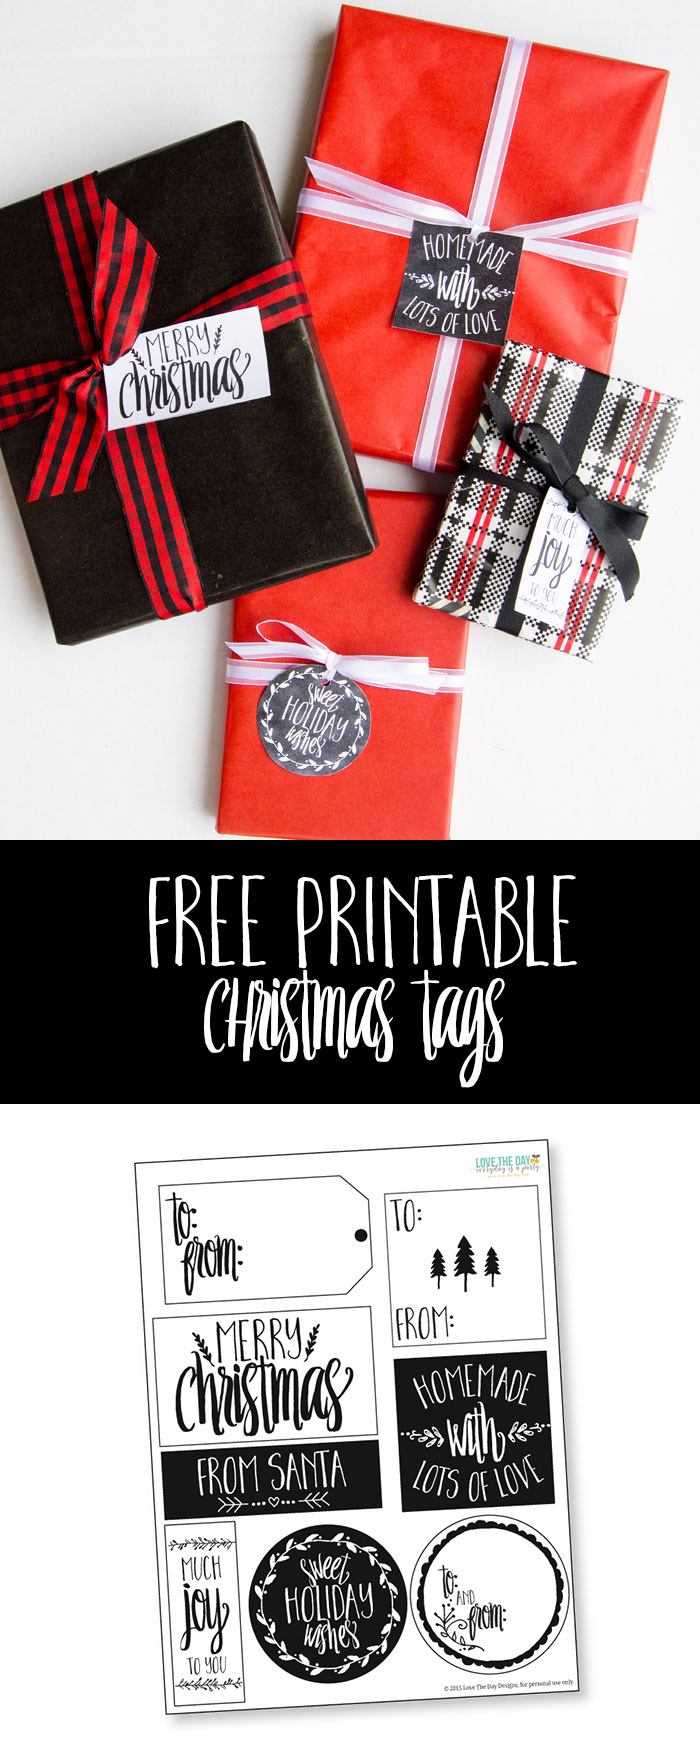 Free Printable Christmas Gift Tags